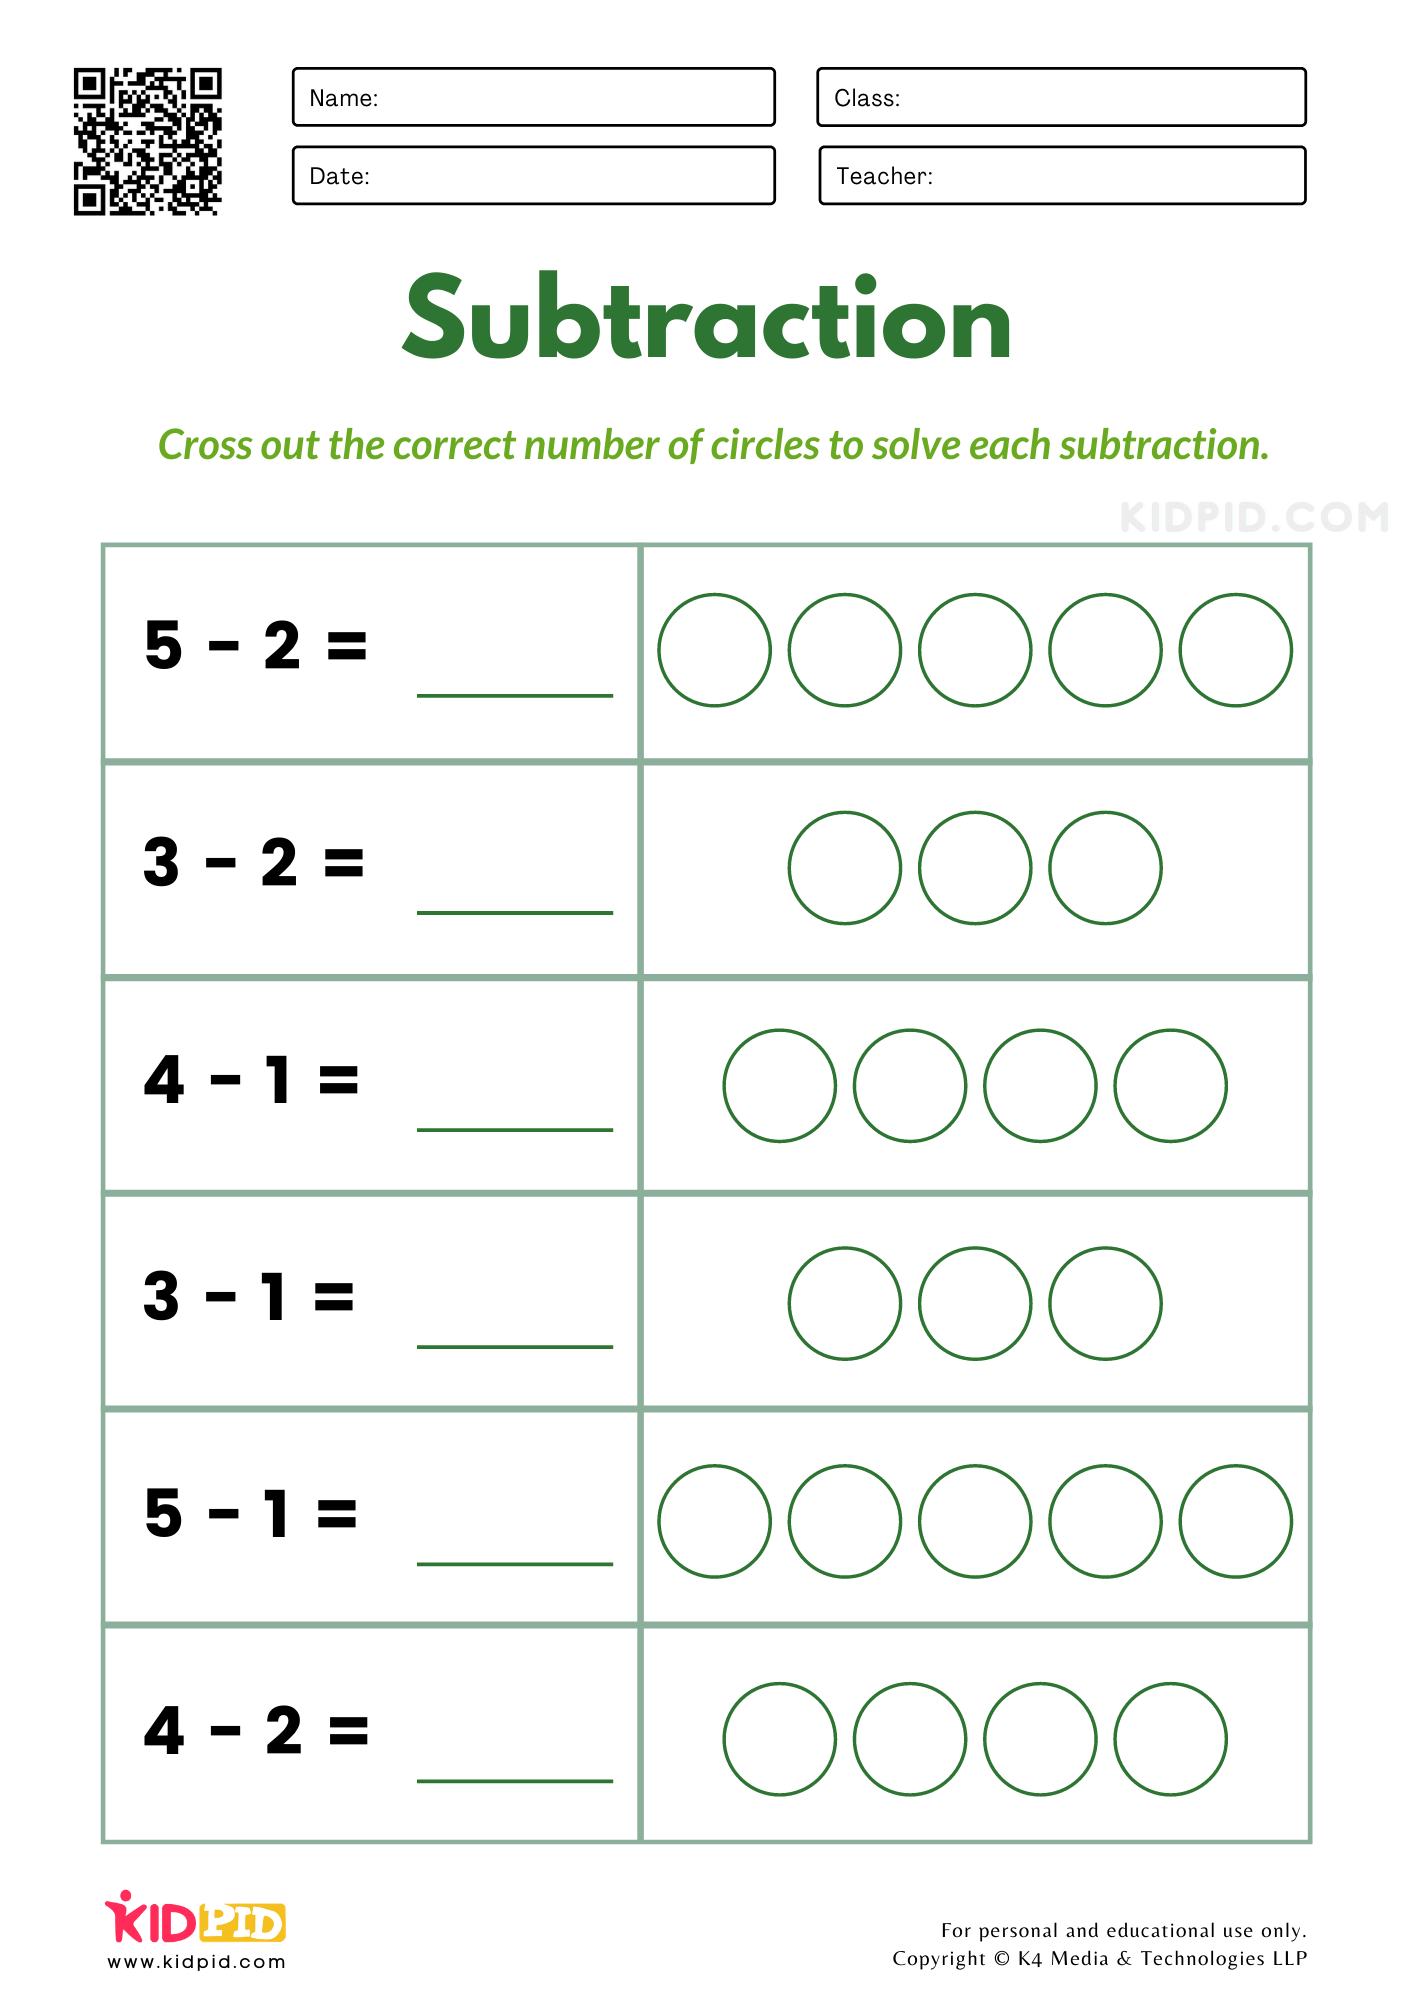 Subtraction Worksheets for Kindergarten - Kidpid Pertaining To Subtraction Worksheet For Kindergarten